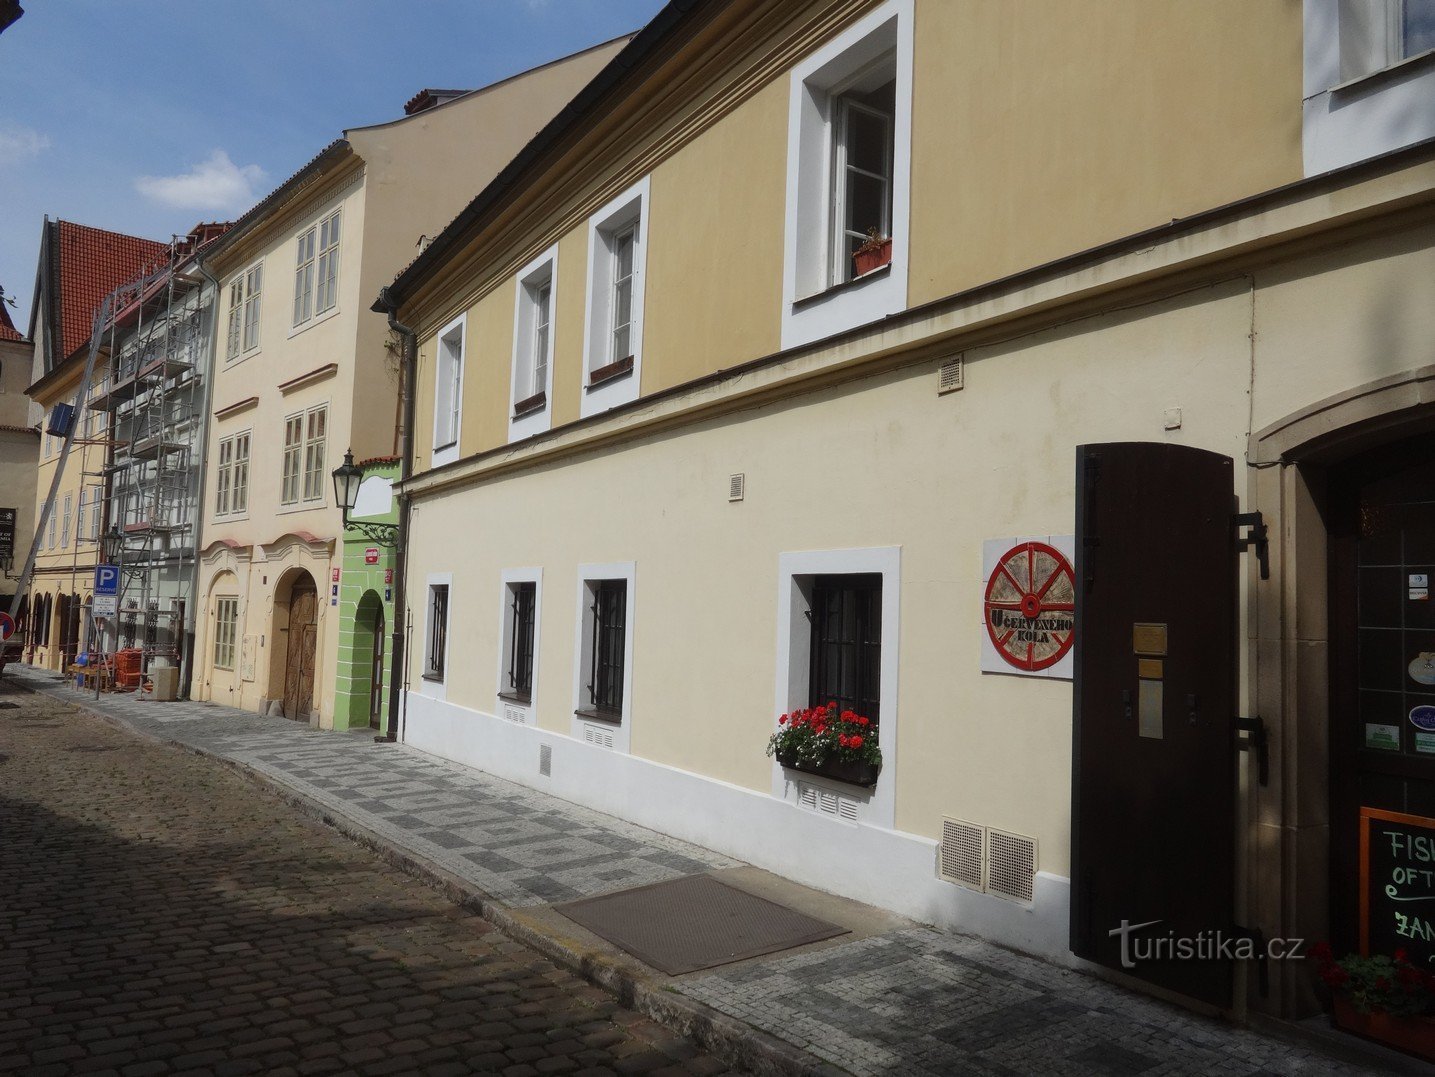 Prague et probablement la maison la plus étroite de la République tchèque